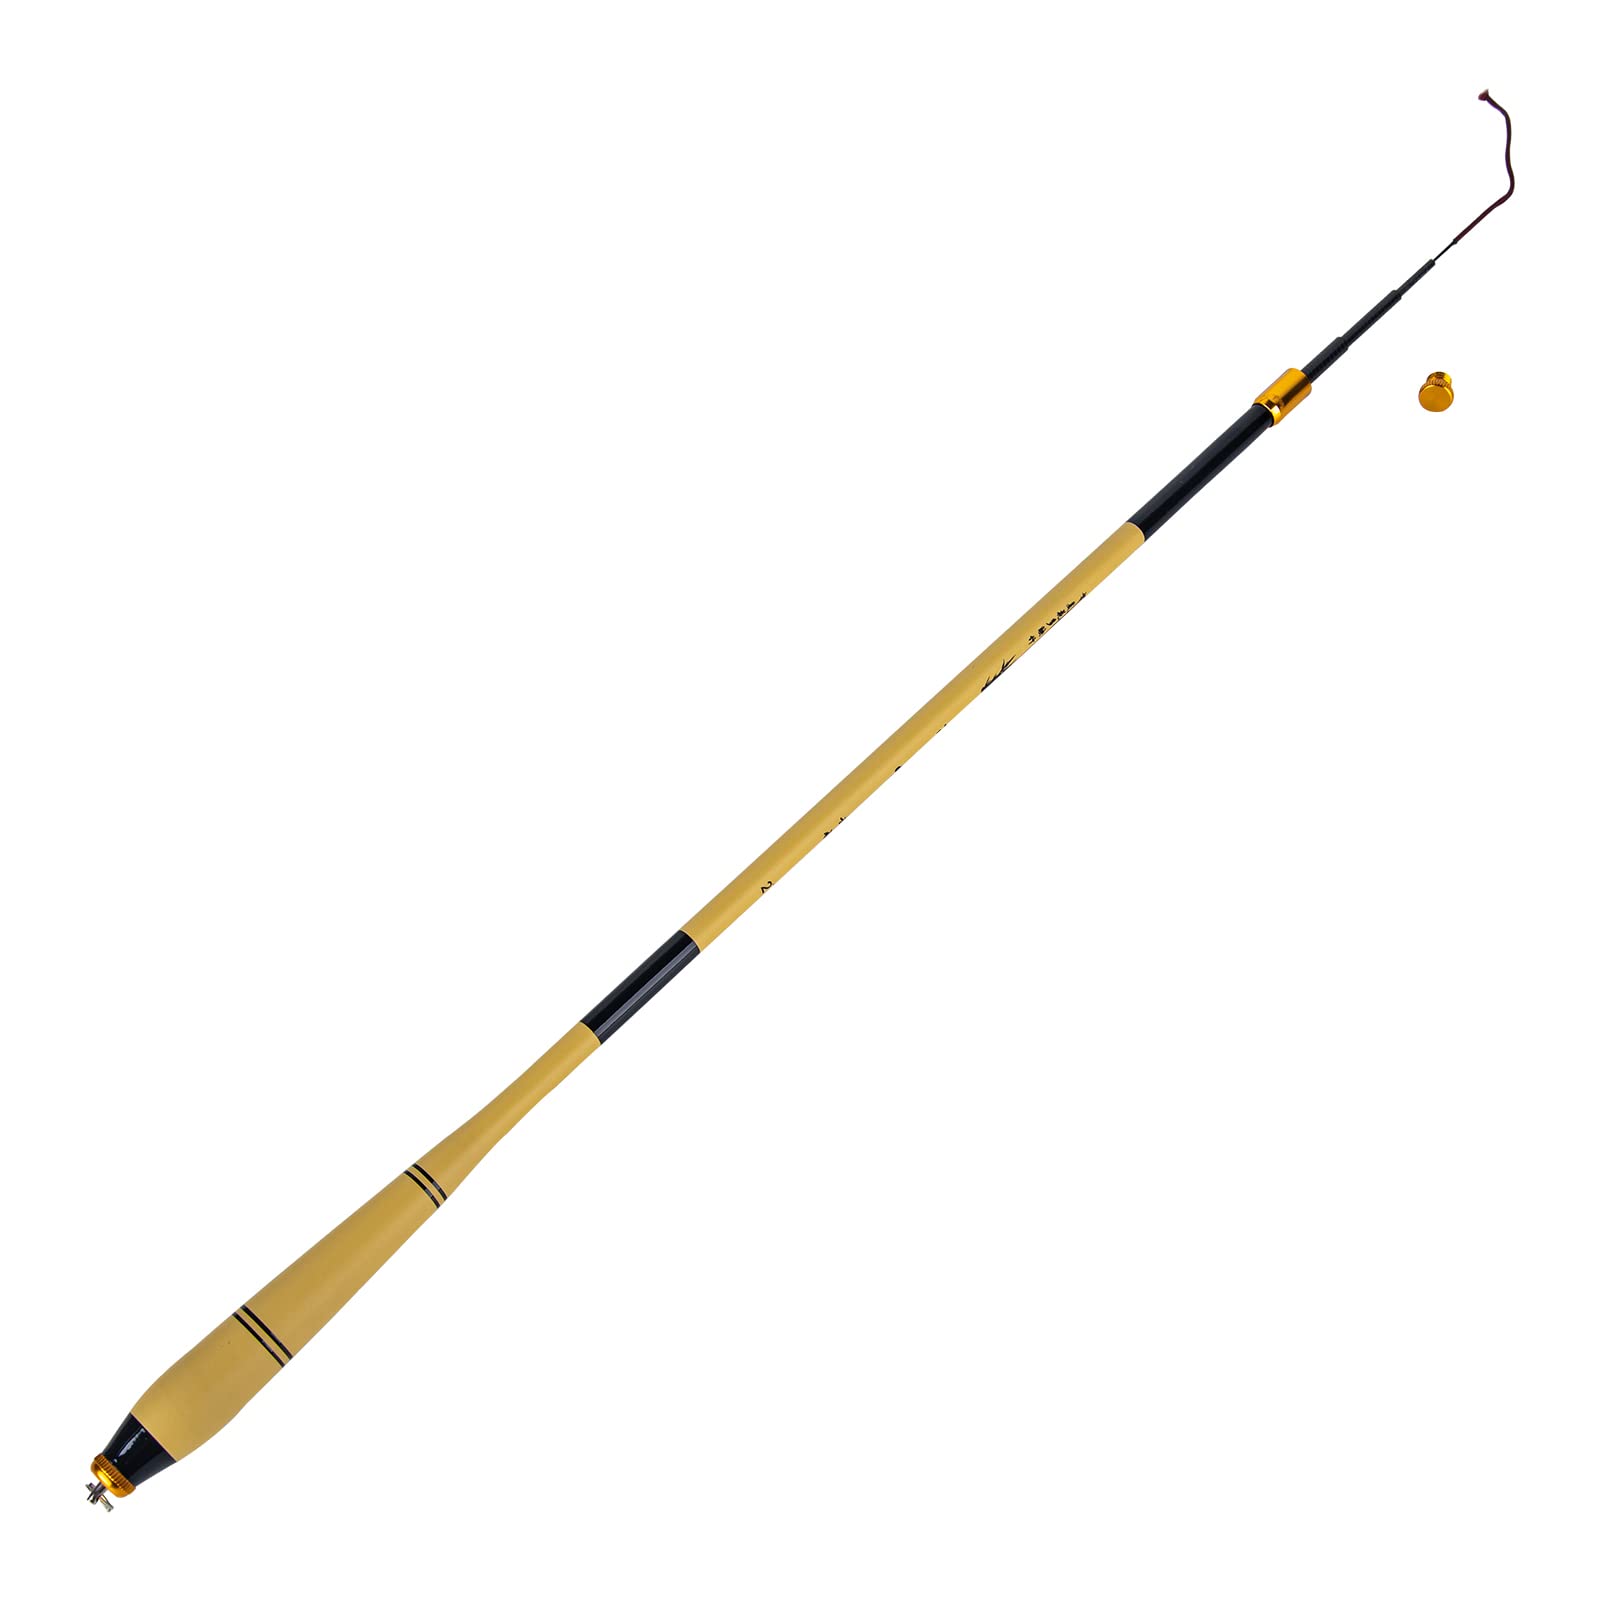 Goture 1.8m-3.6m Telescopic Fishing Rod Carbon Fiber Ultra Light Fishing  Pole Portable Travel